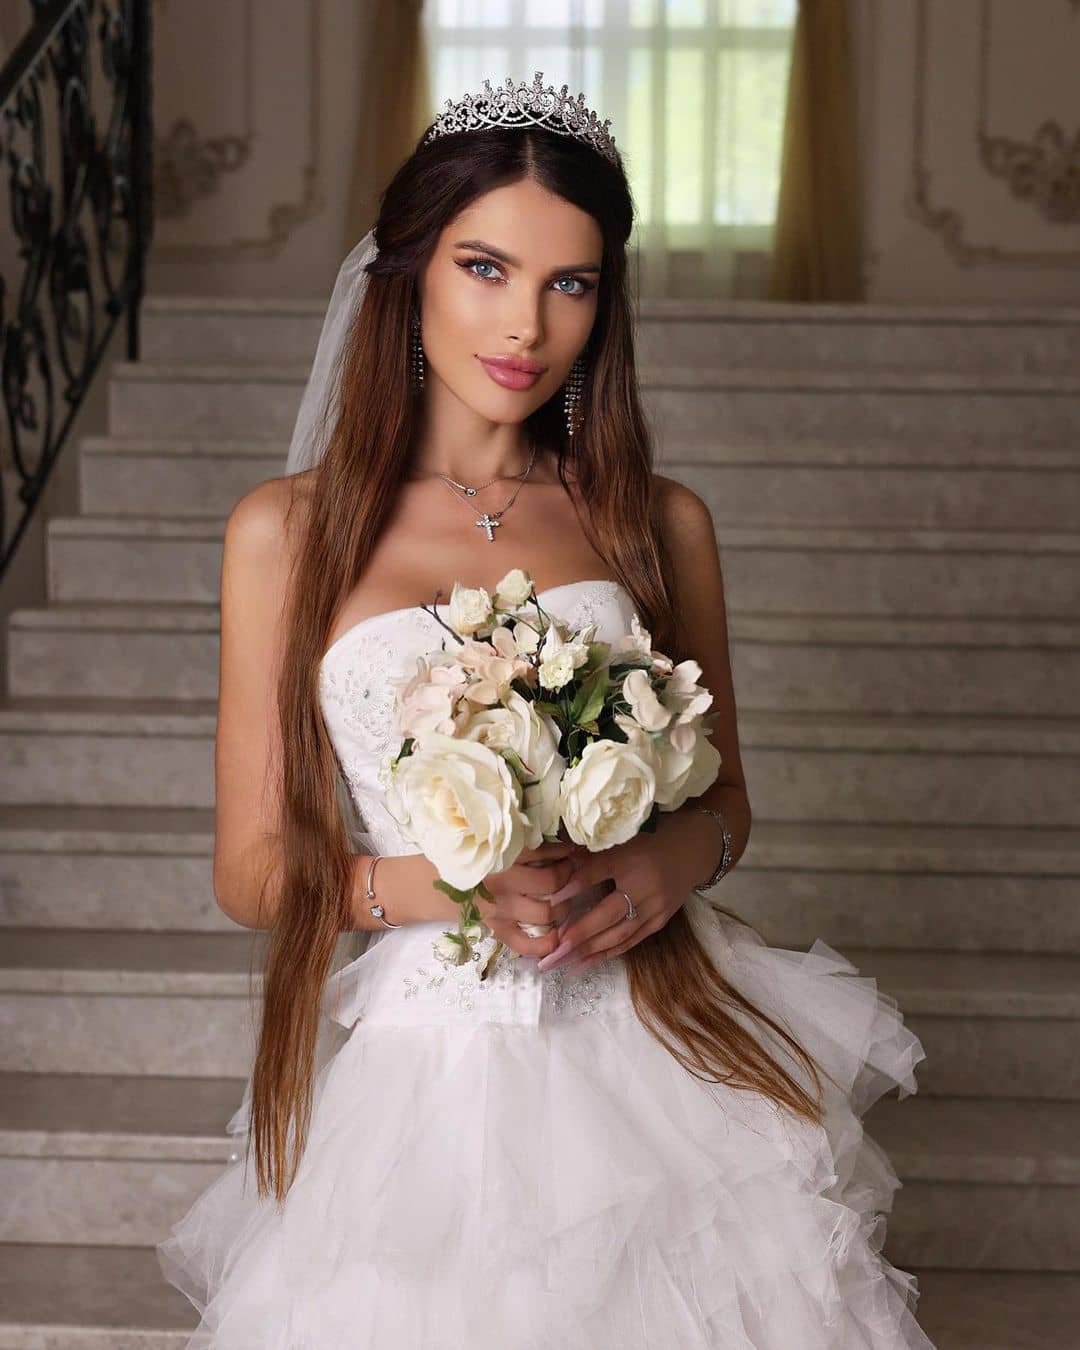 Алеся Семеренко сообщила, что выходит замуж за Никиту Барышева